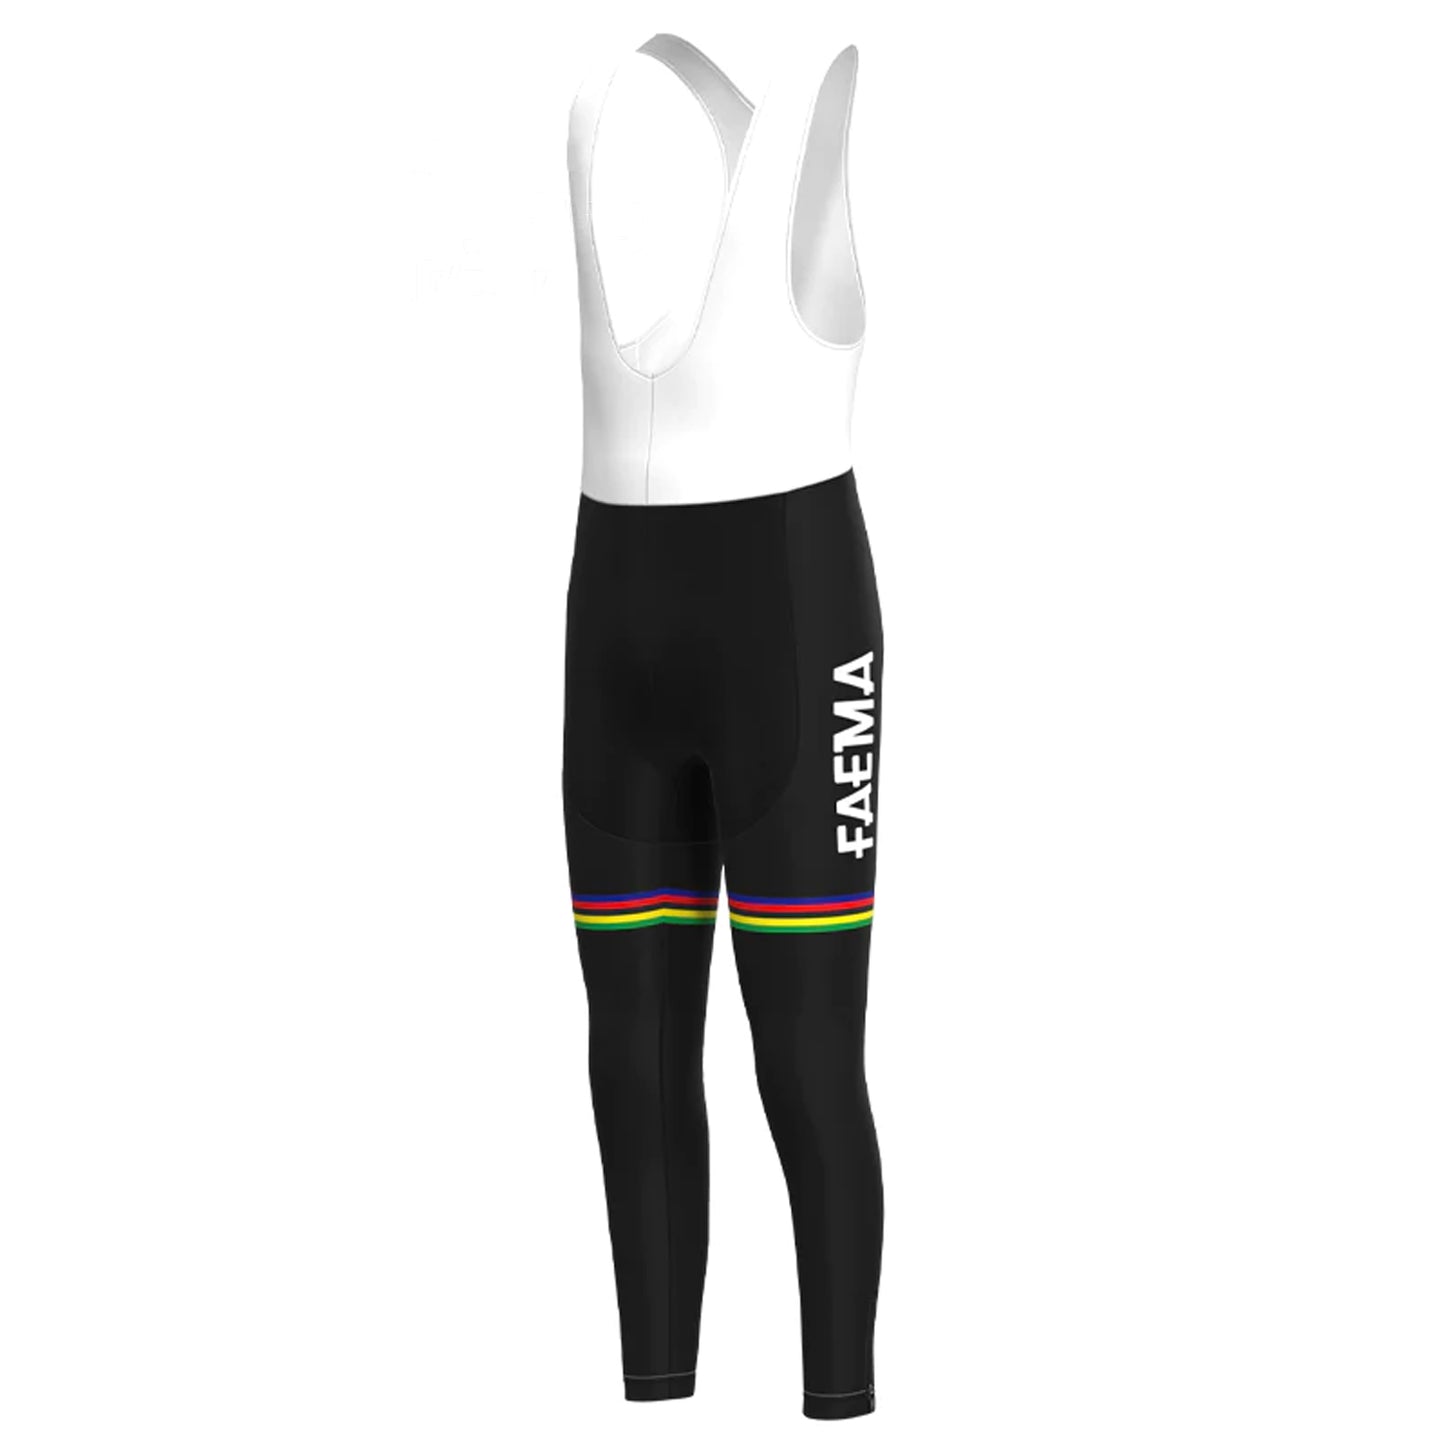 Faema White Long Sleeve Cycling Jersey Matching Set